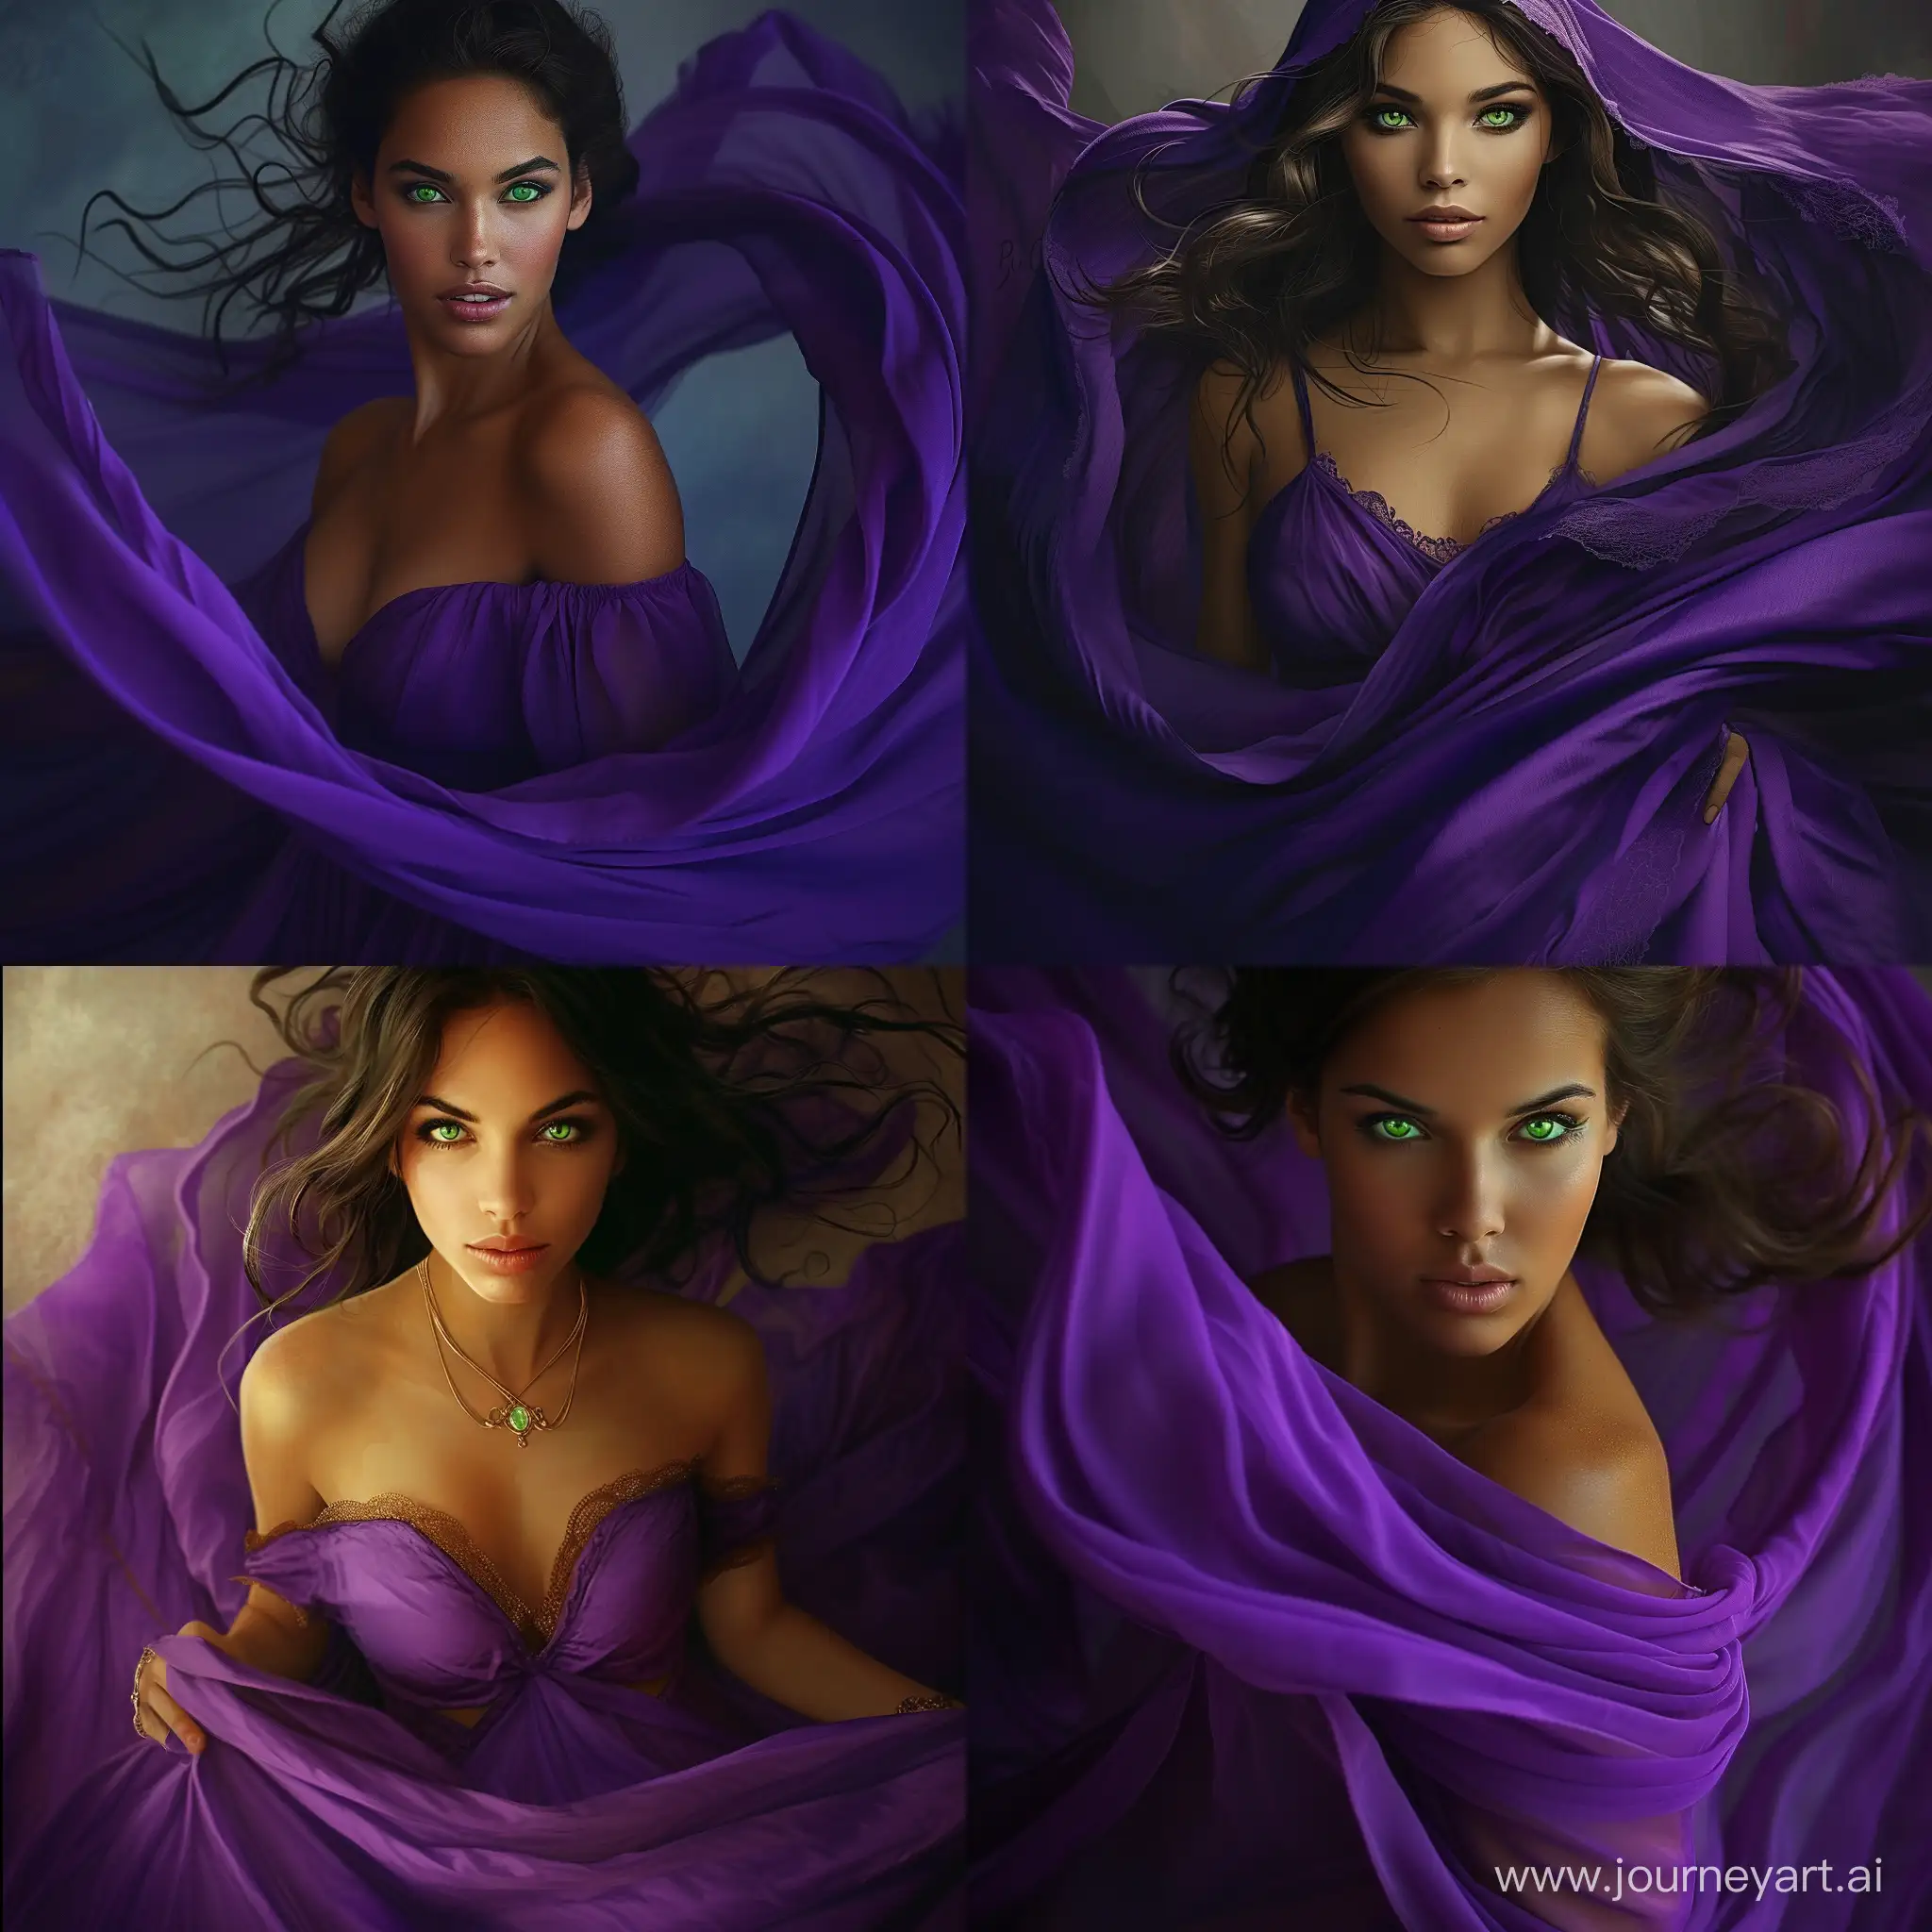 Elegant-Arab-Woman-in-Flowing-Purple-Dress-with-Striking-Green-Eyes